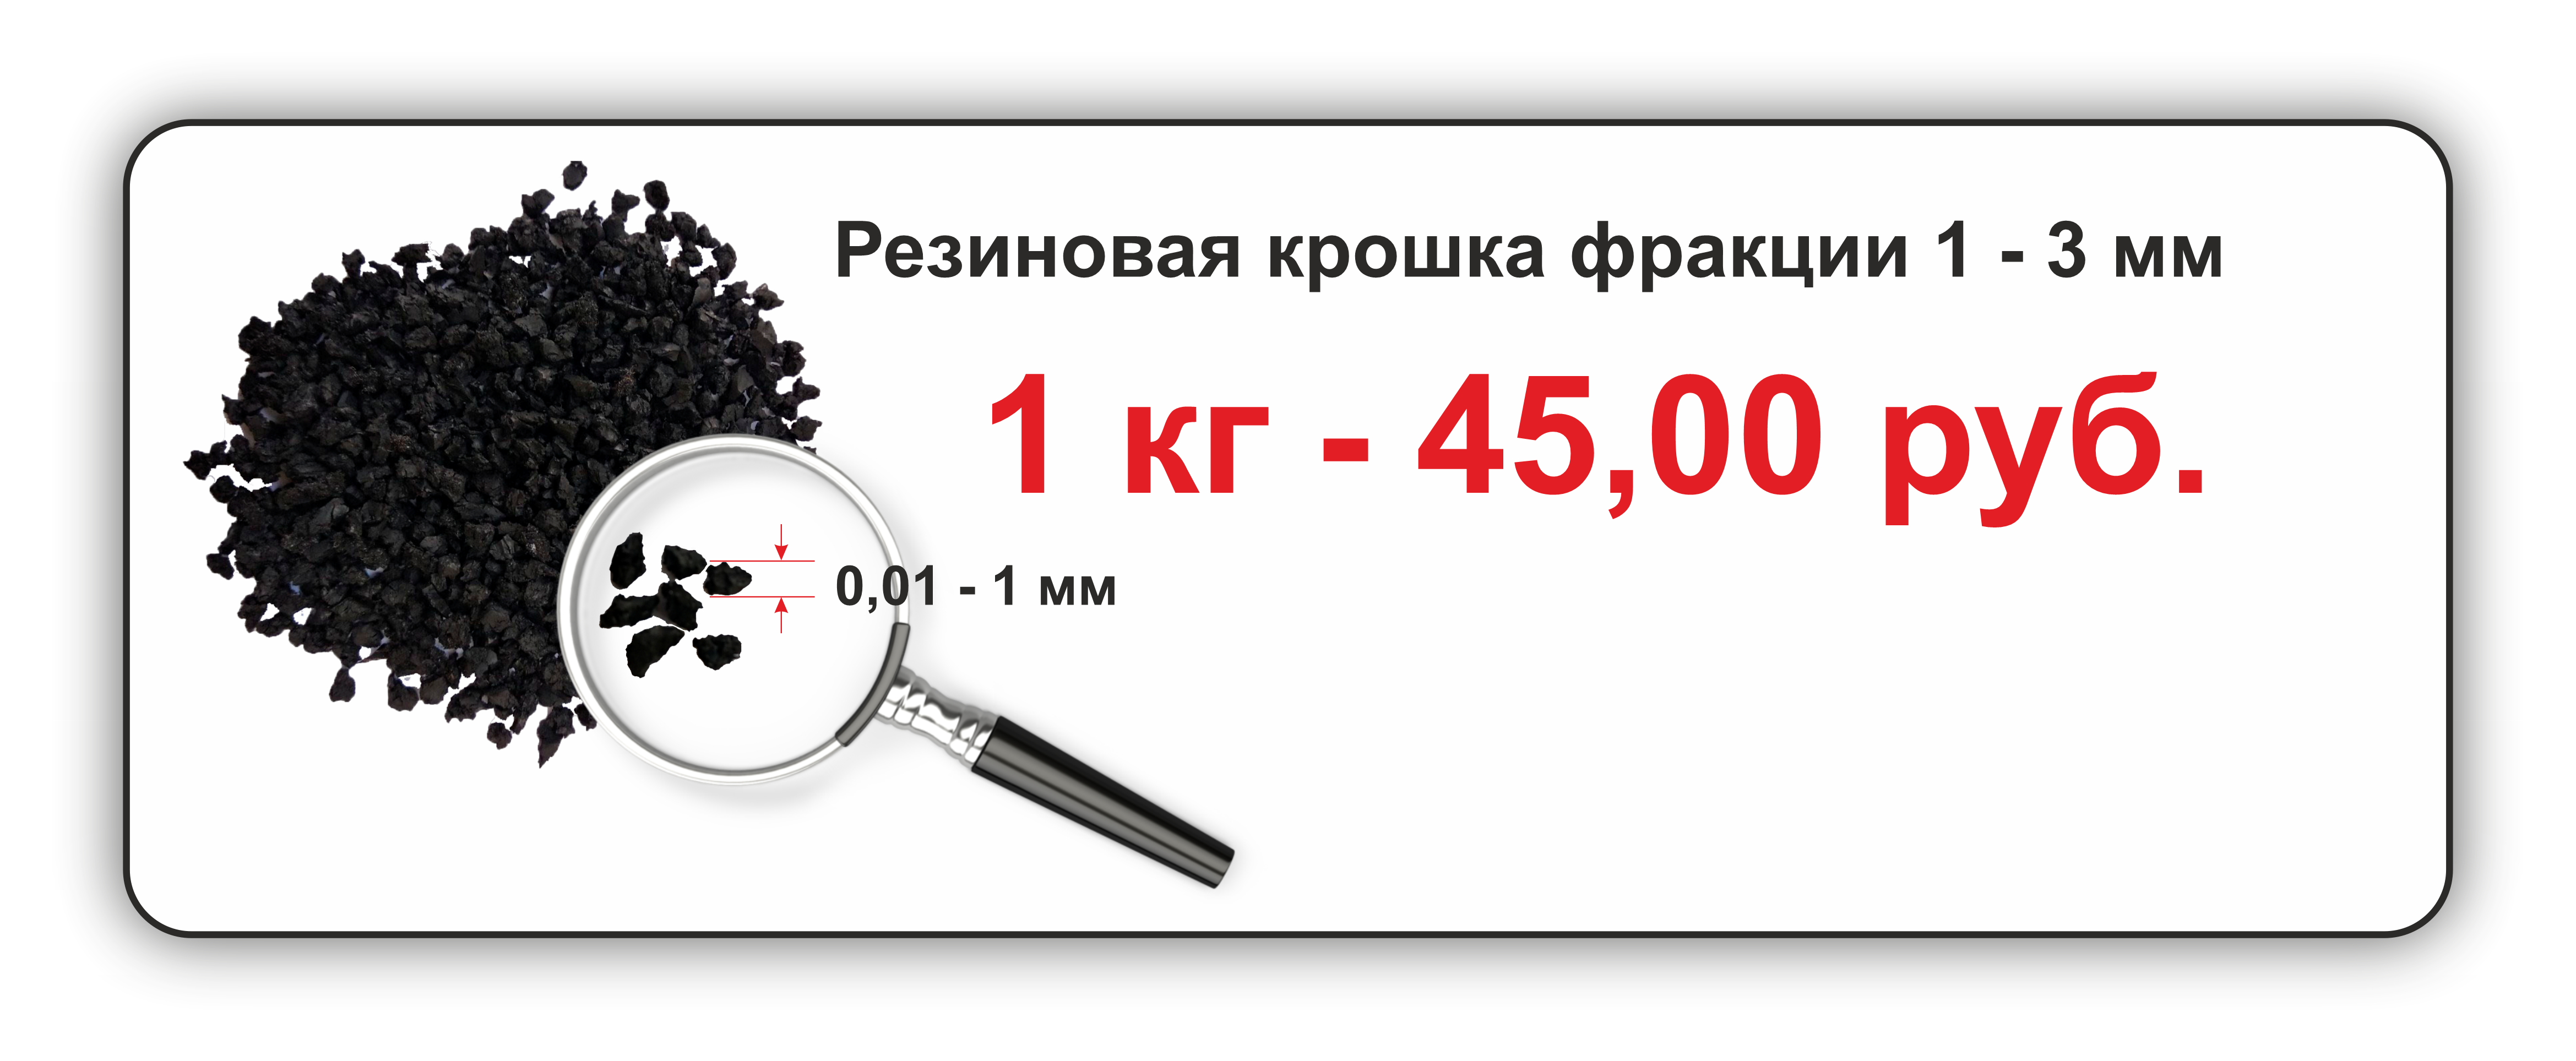 Резиновая крошка фракция 1-3мм от производителя Крым